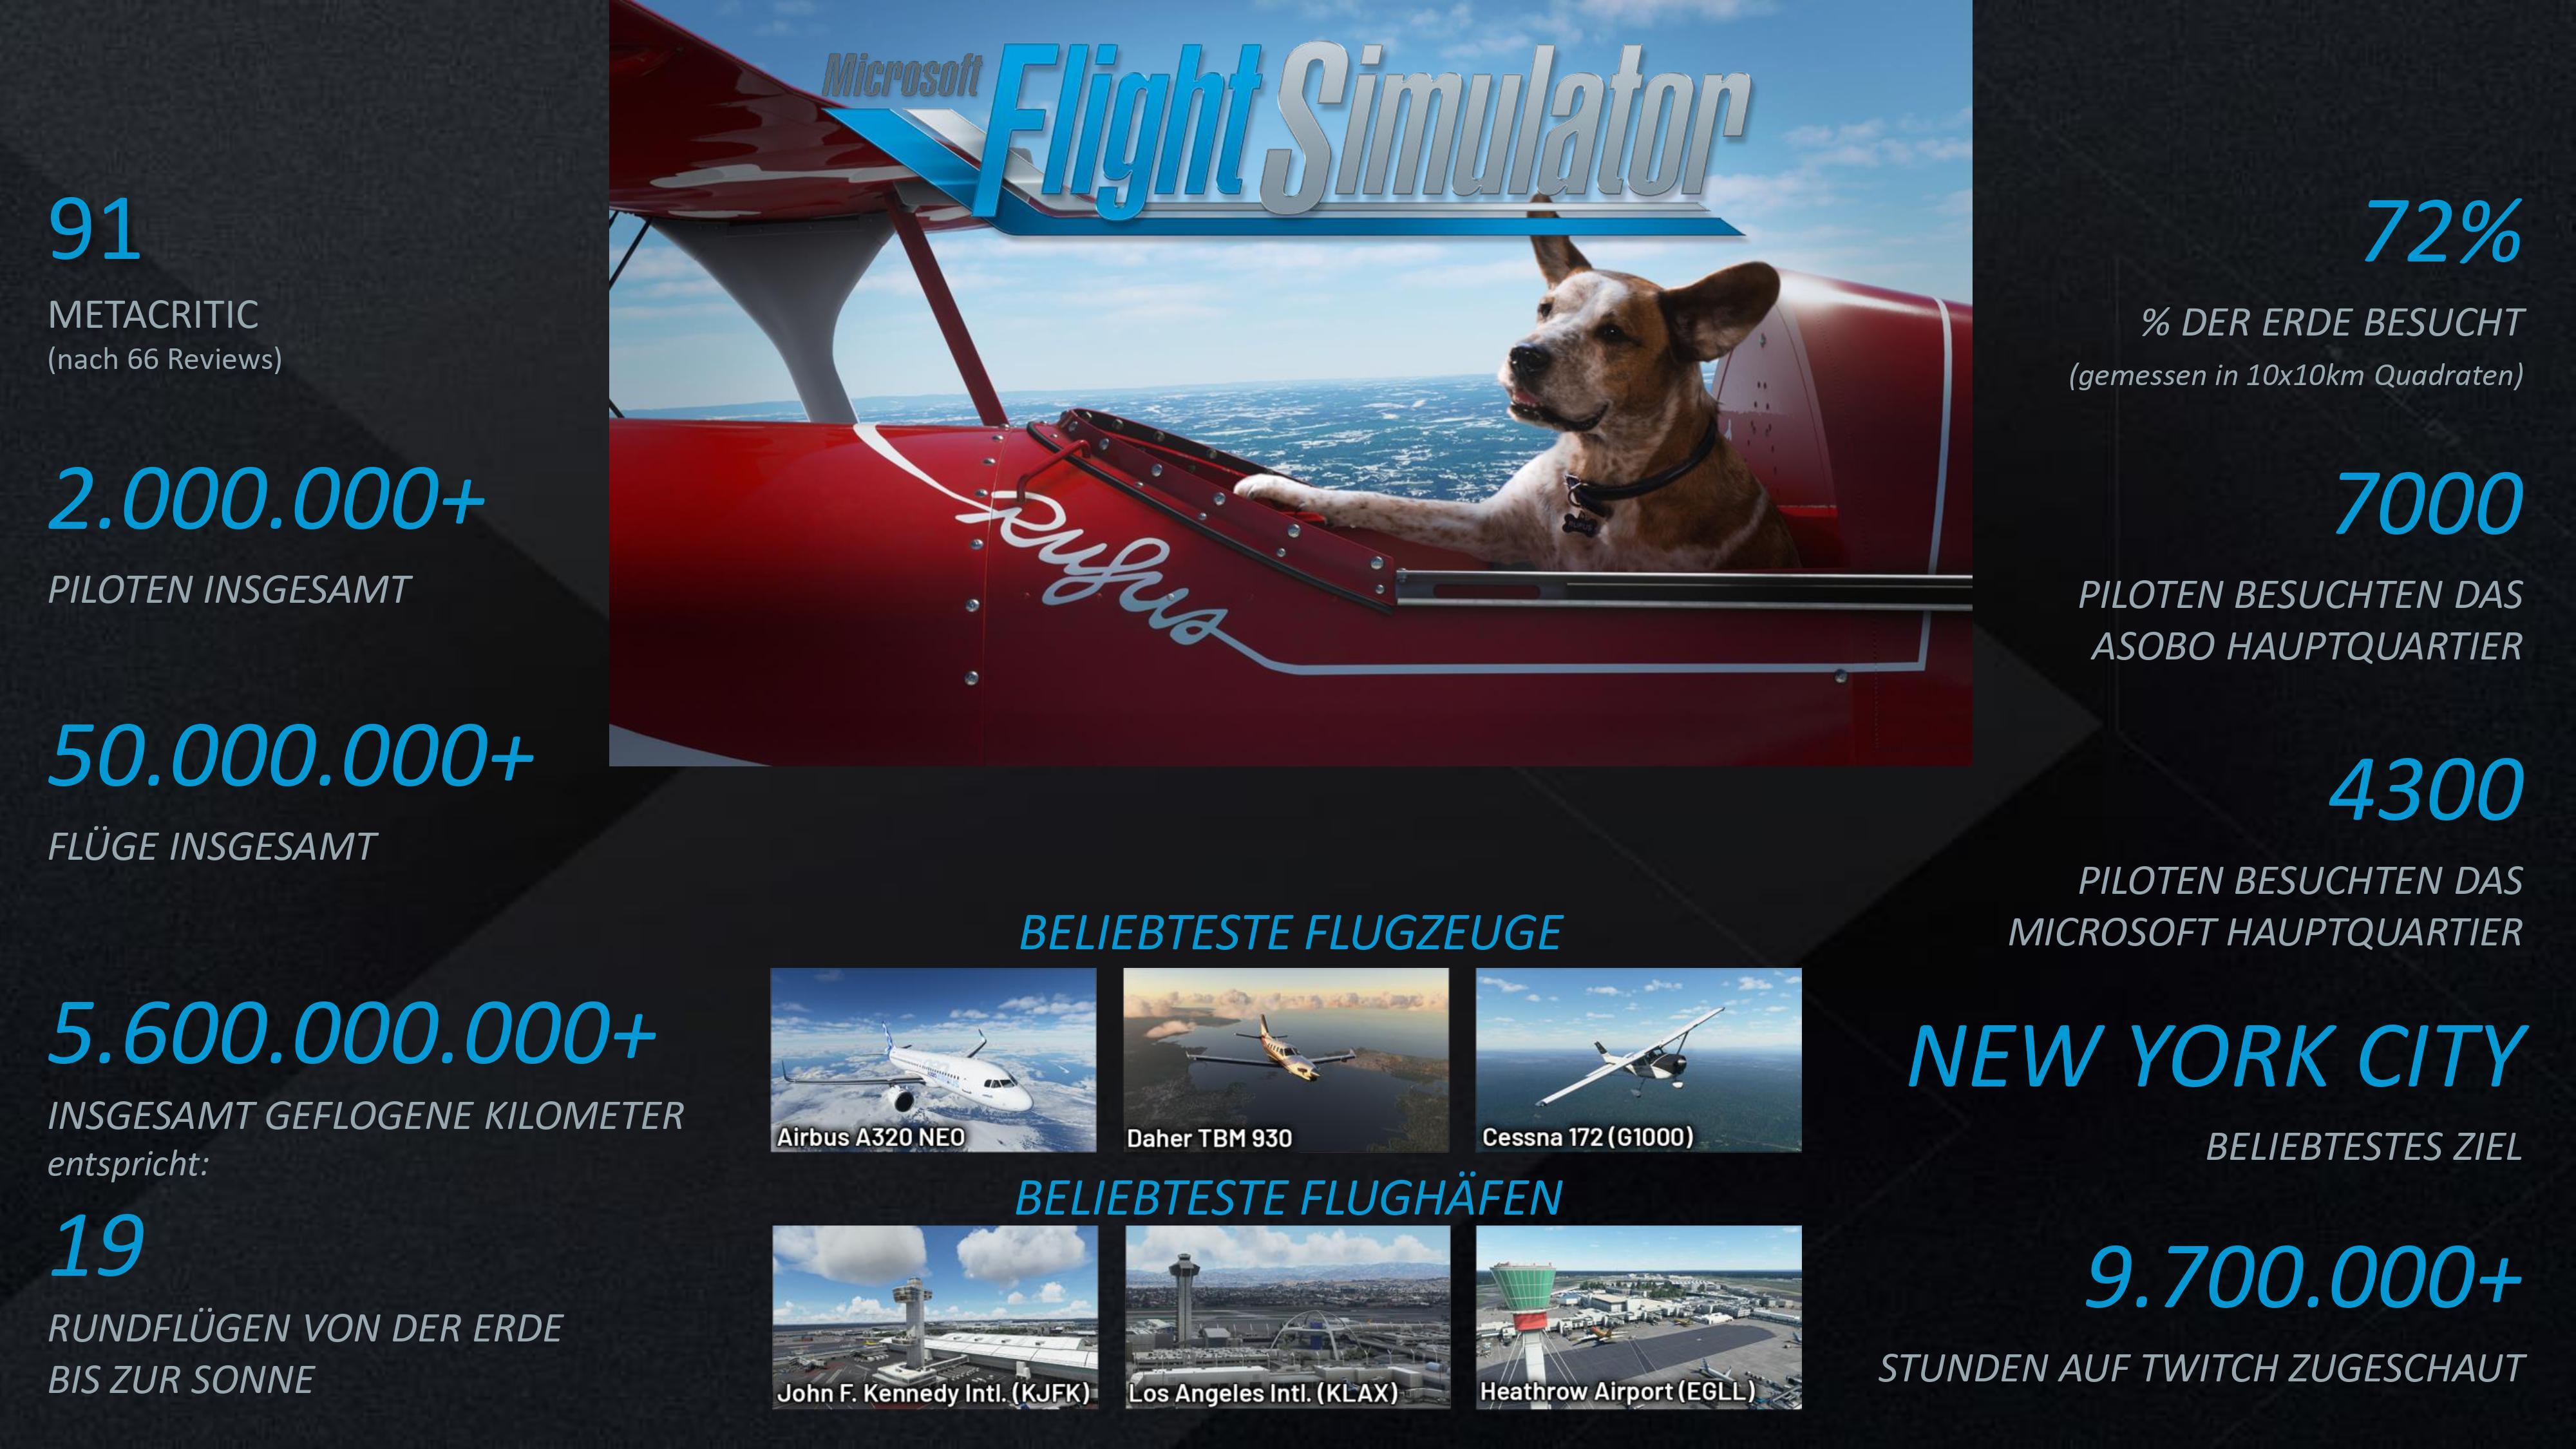 Über 2 Millionen Spieler: Der erfolgreichste Microsoft Flight Simulator aller Zeiten!